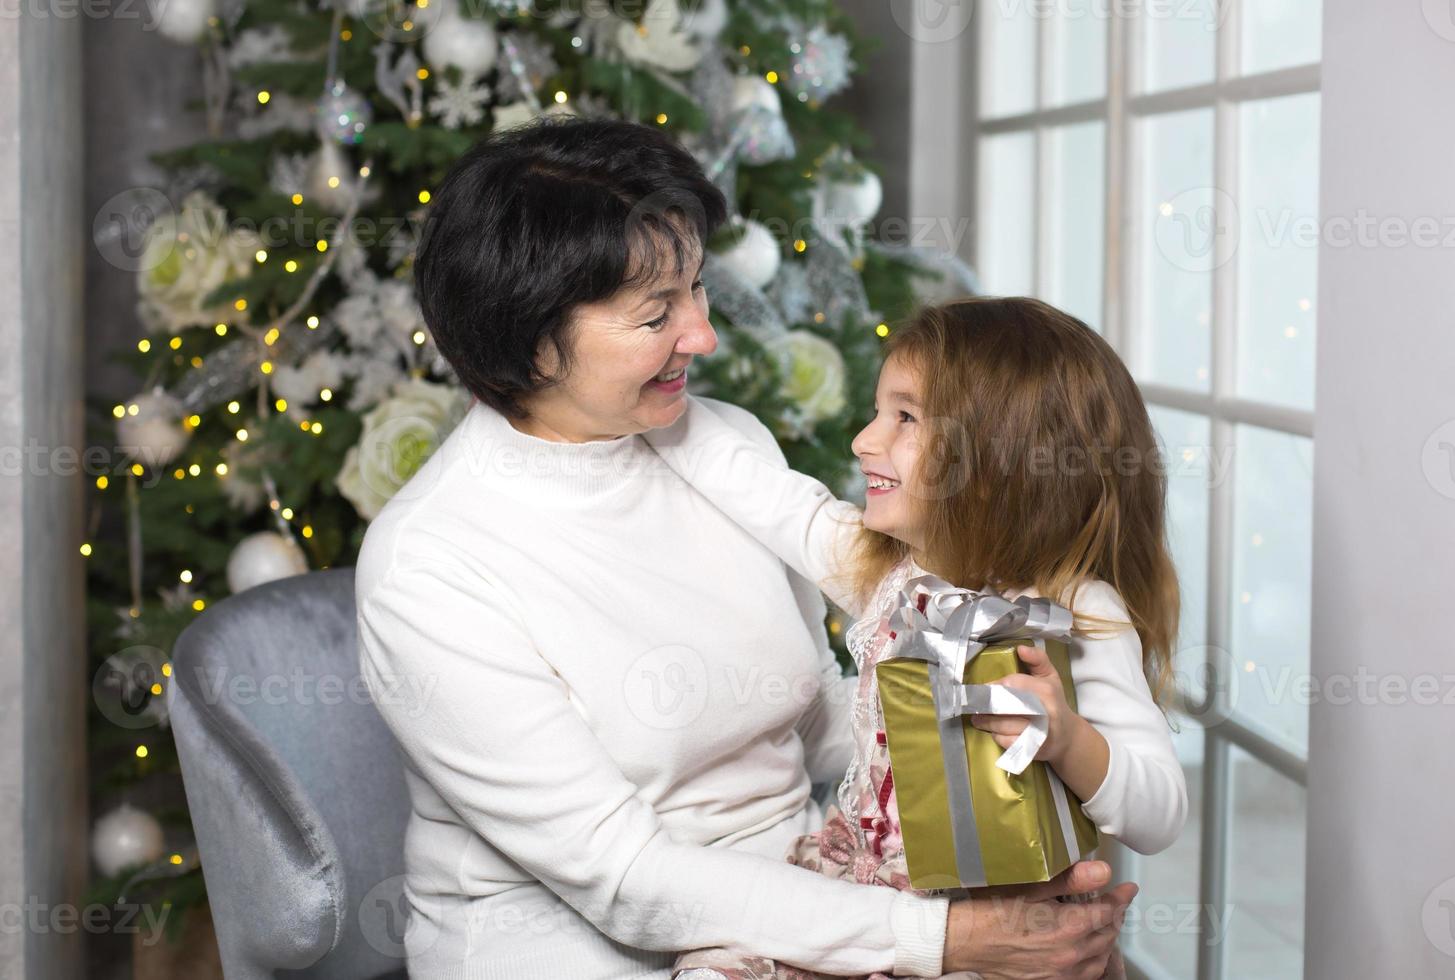 mormor med en liten flicka på de bakgrund av jul dekorationer och en stor fönster. familj Semester, känslor, gåva låda. barnbarn på mormors knä. ny år foto